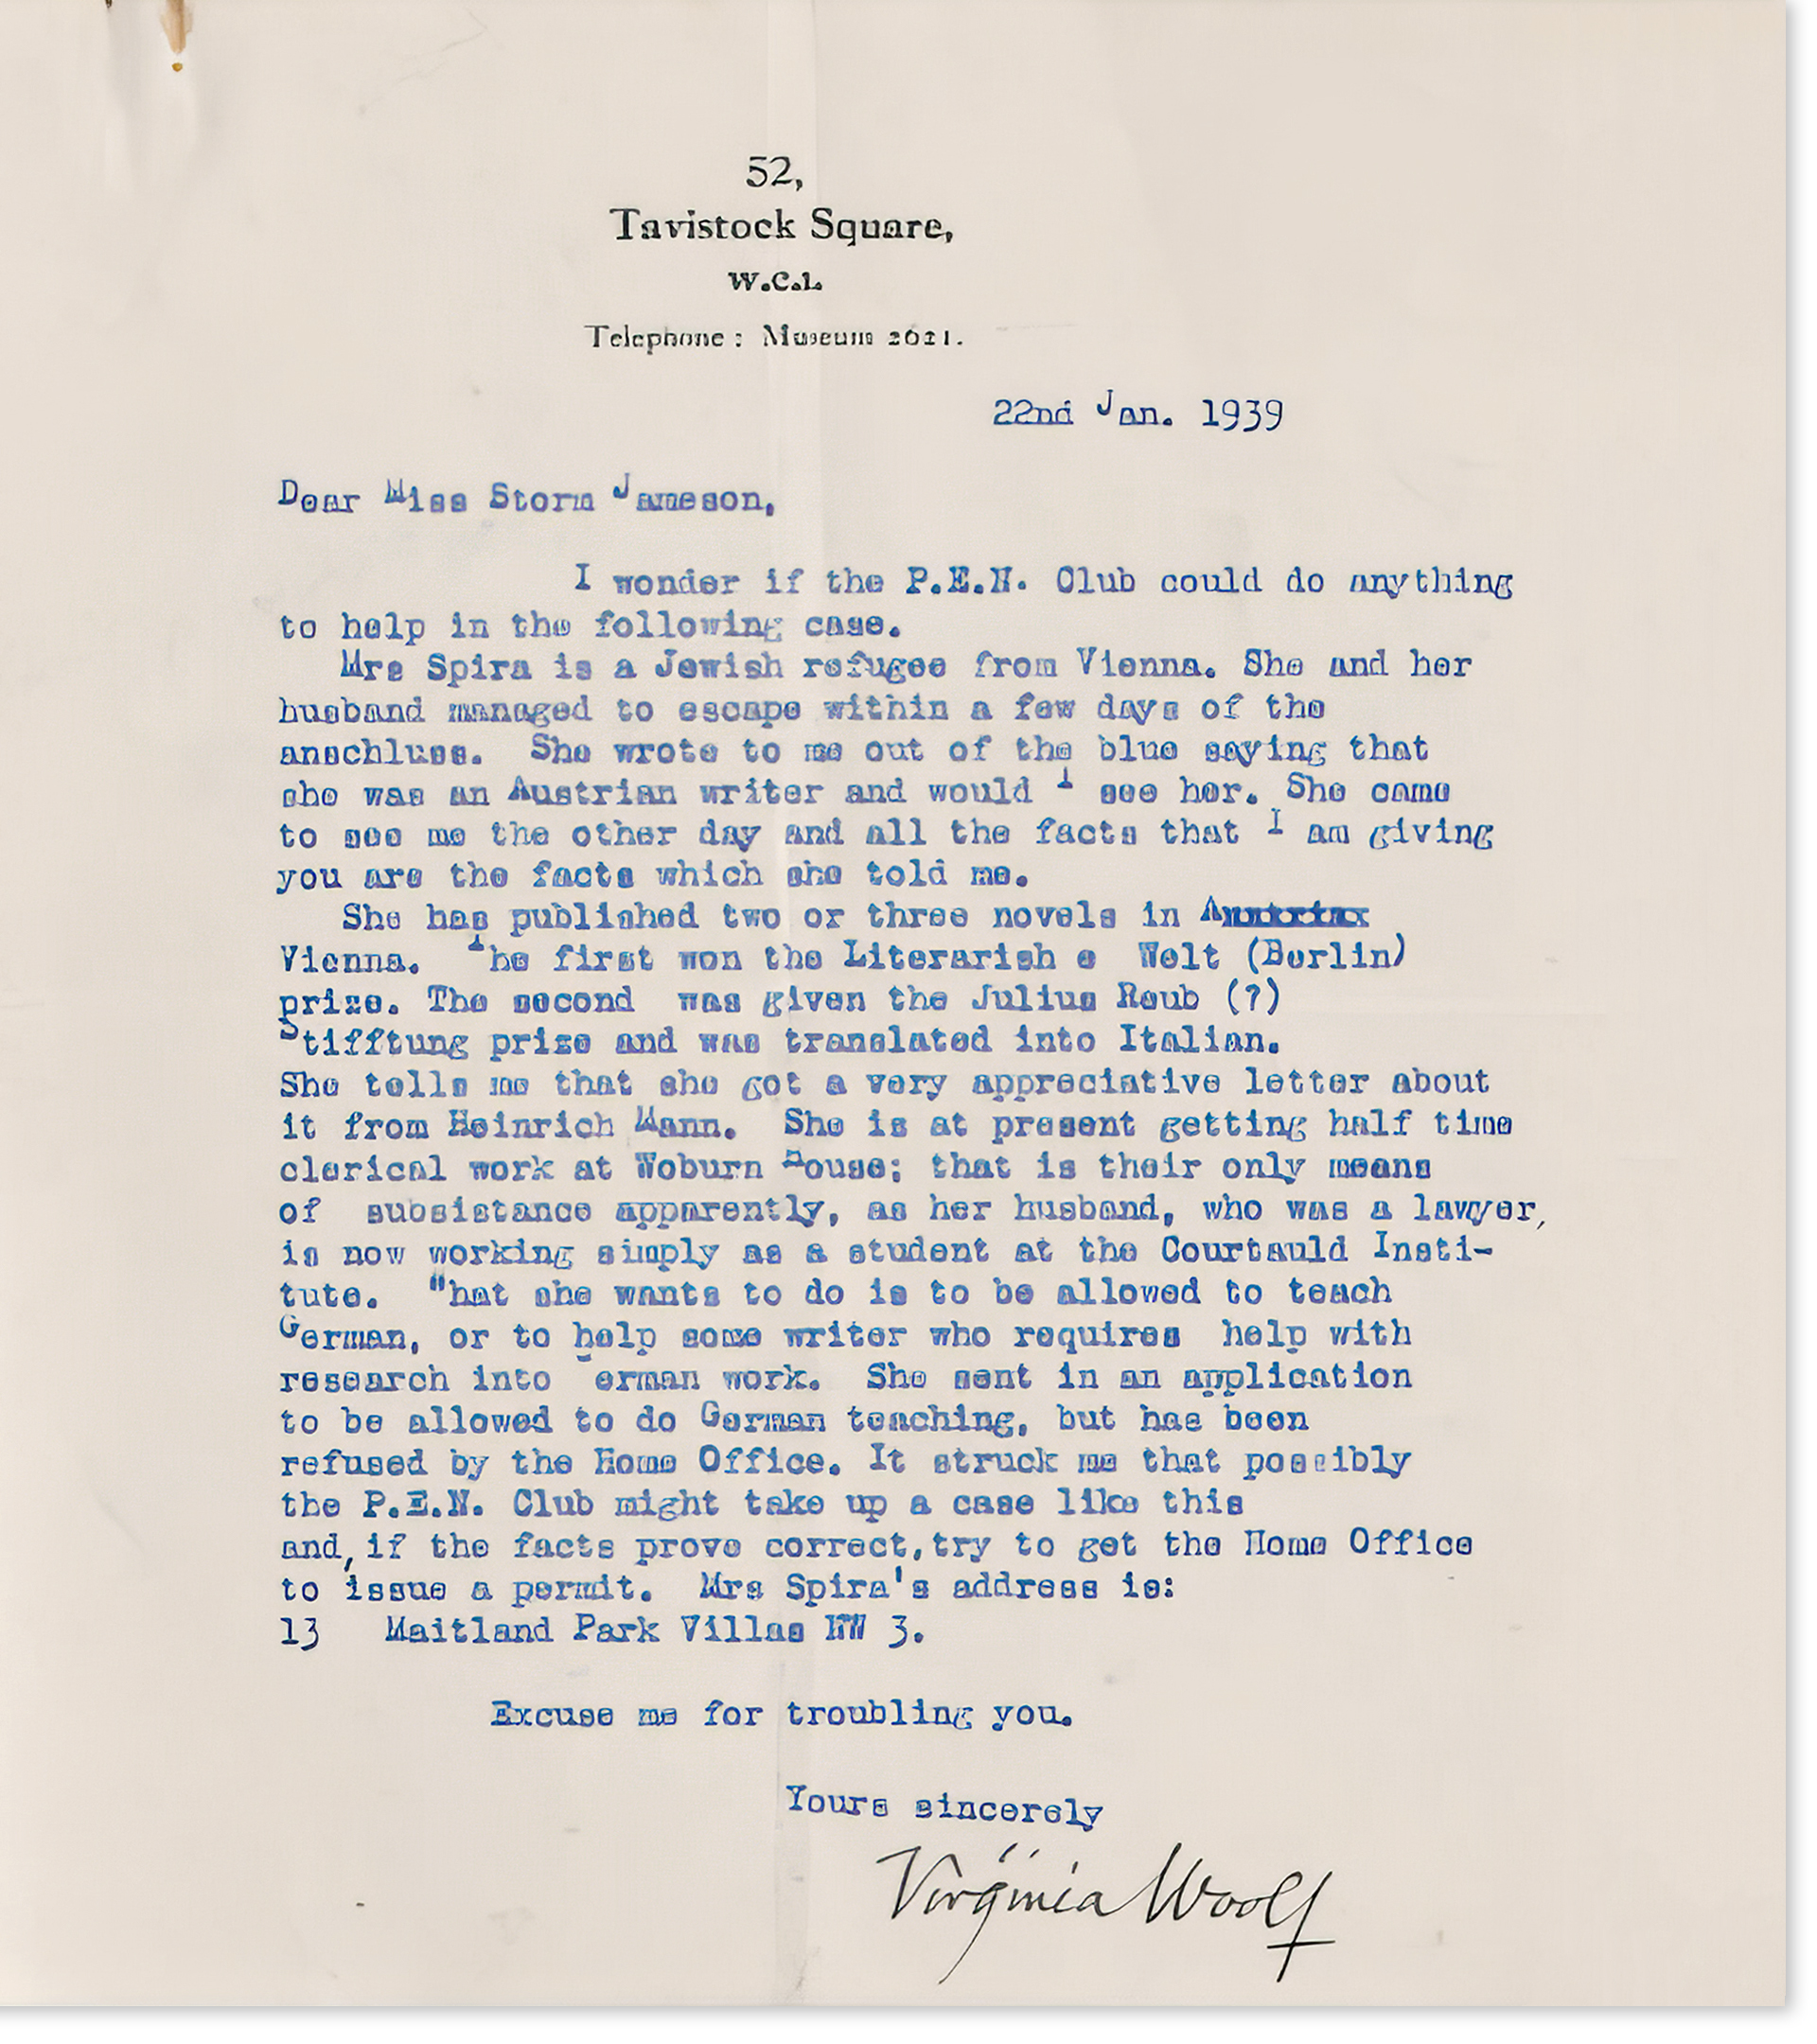 Carta de Virginia Woolf a Storm Jameson, presidenta de la rama inglesa del PEN Club.